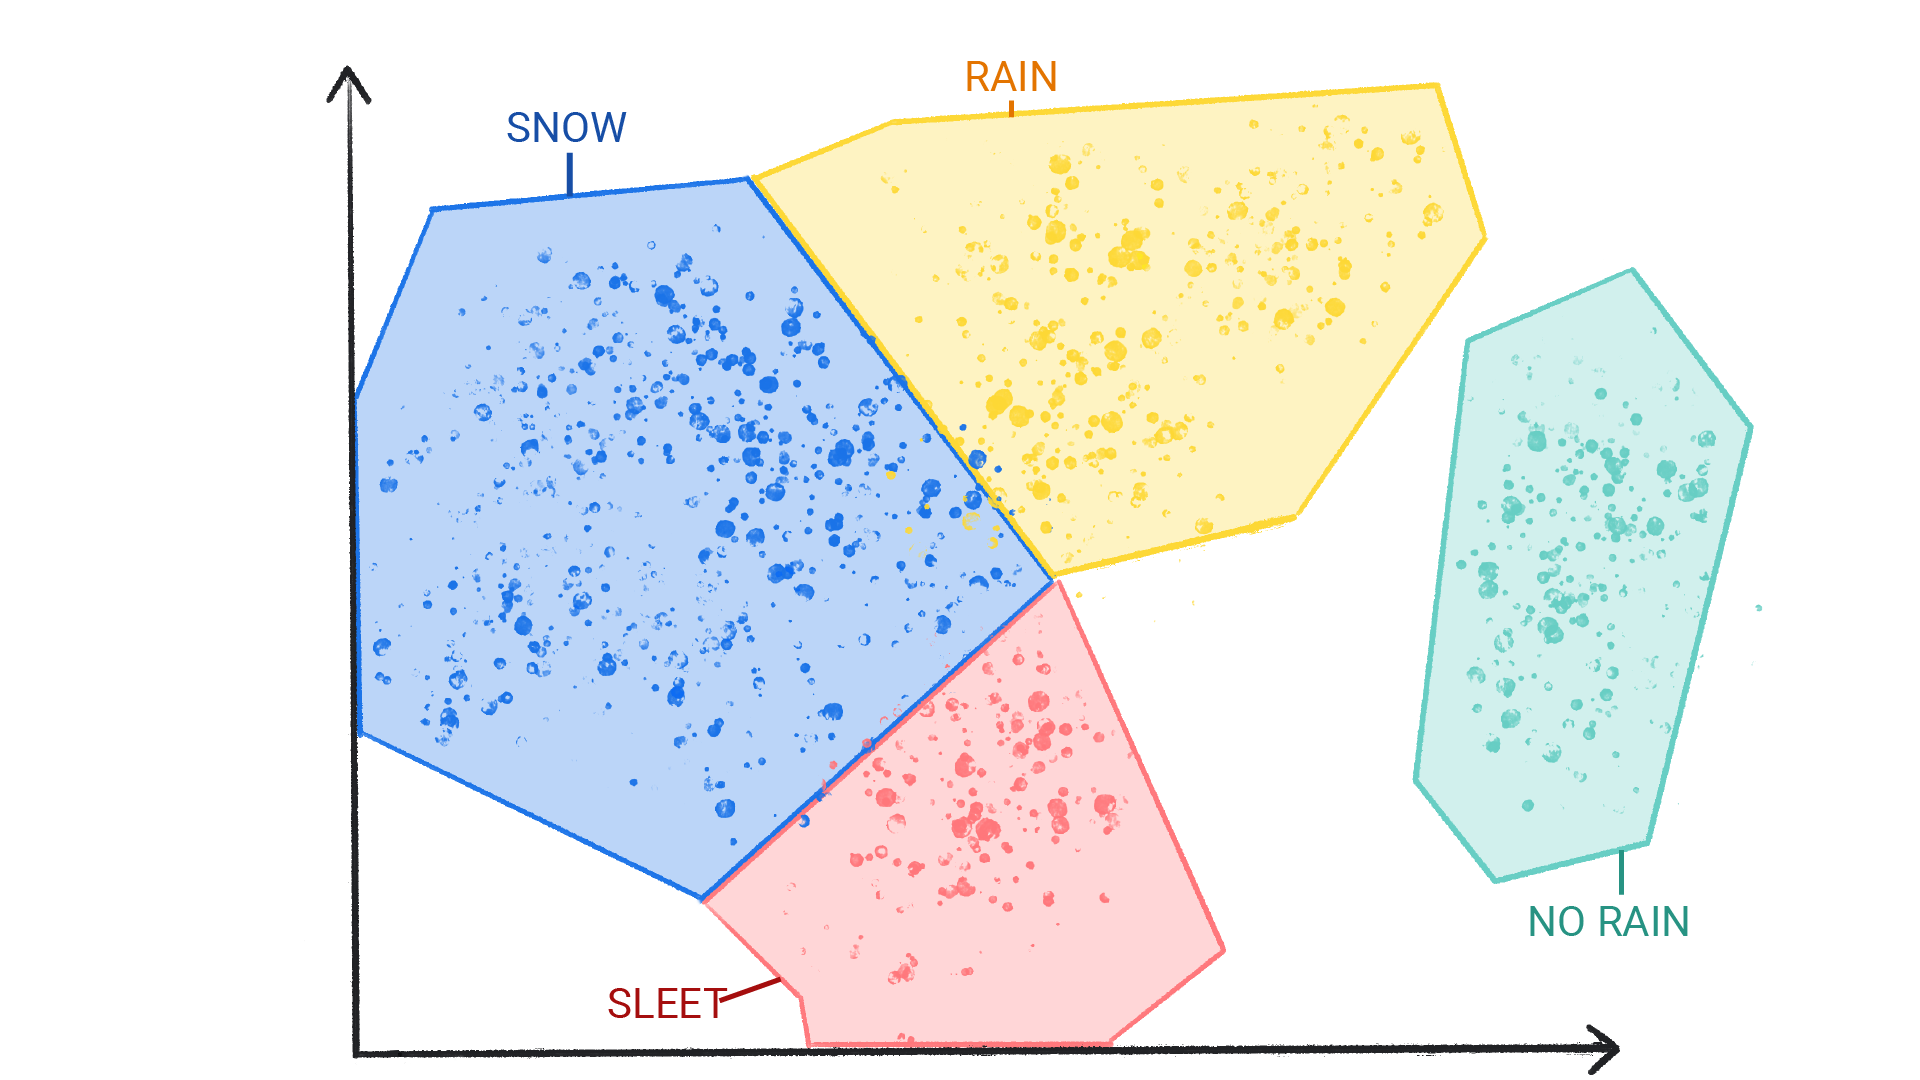 Изображение, на котором показаны цветные точки в кластерах, помеченные как снег, дождь, град и отсутствие дождя, заключенные в фигуру и граничащие друг с другом.